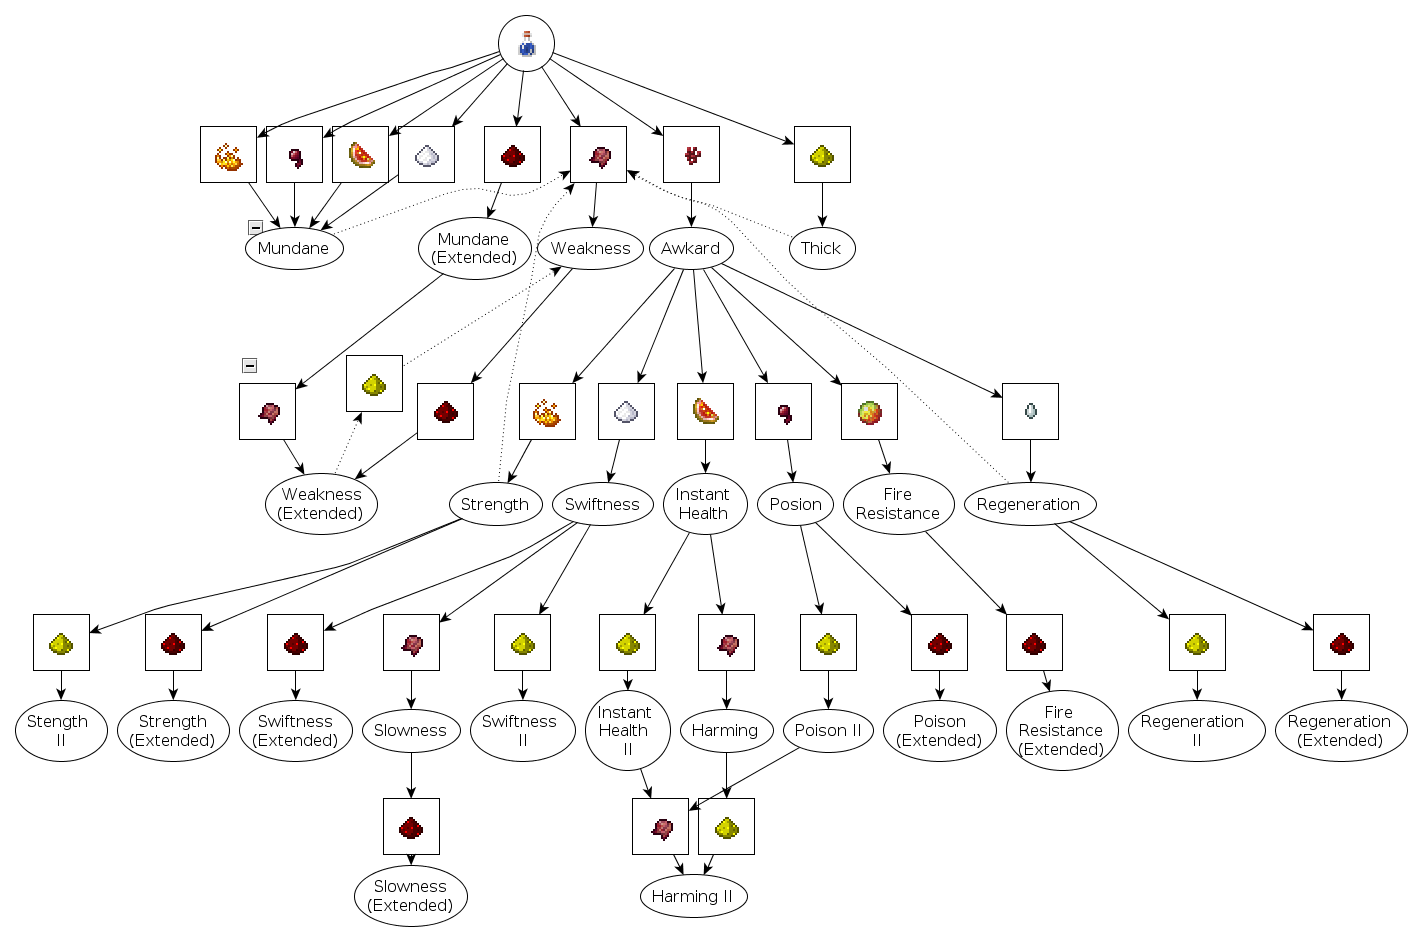 Potion Chart